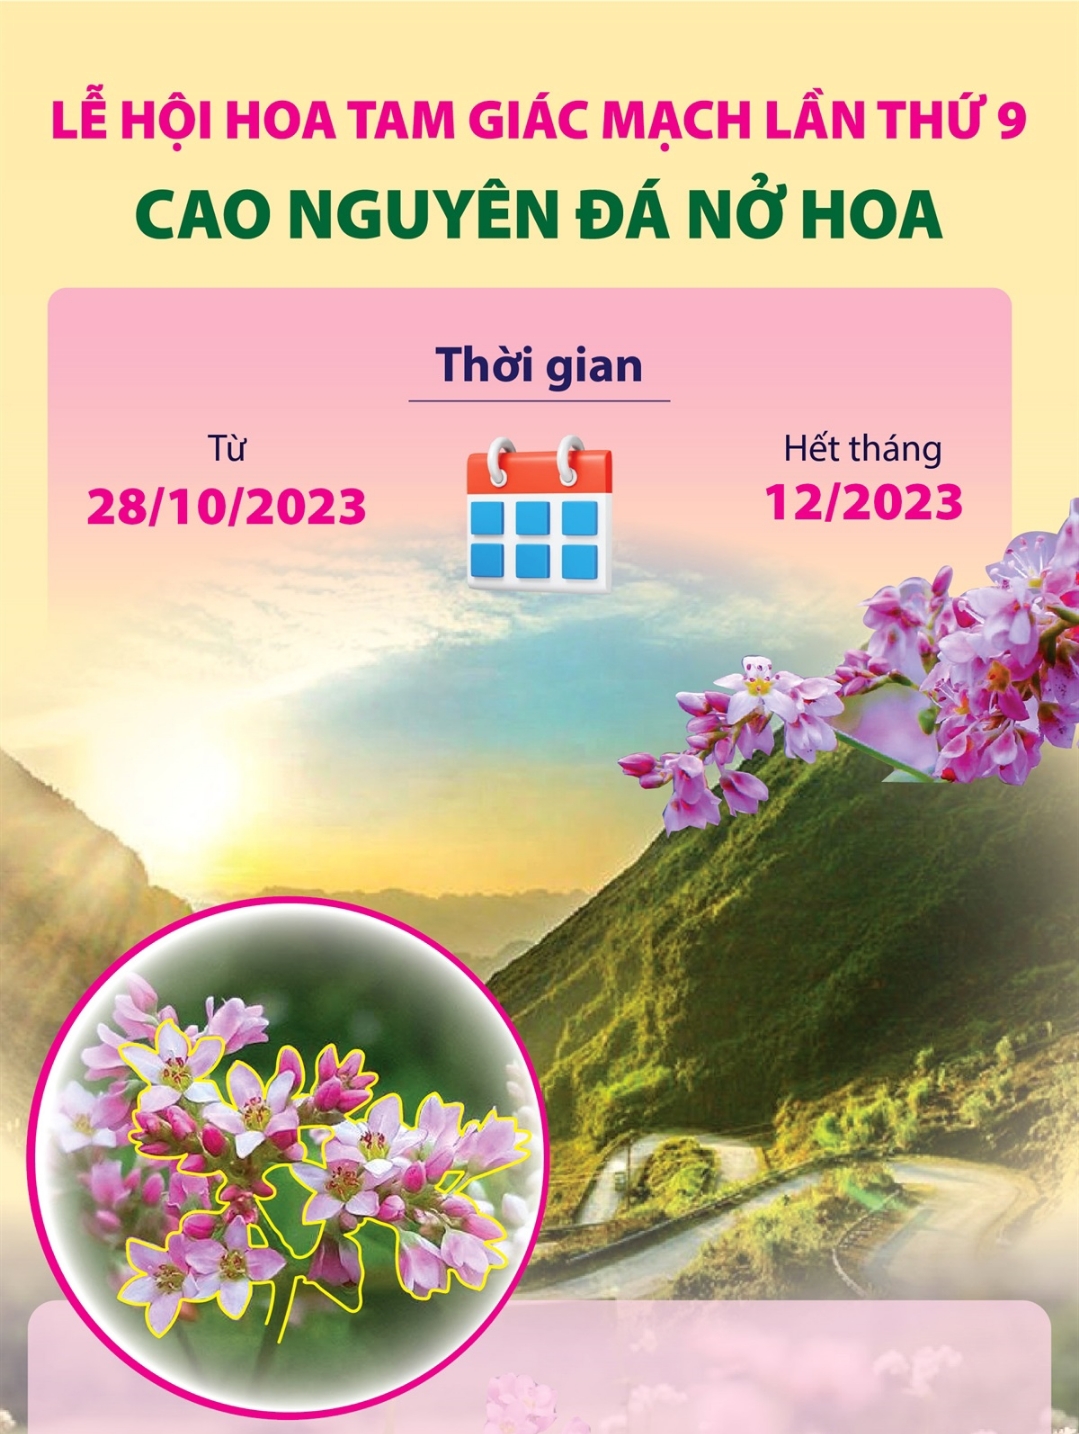 Hà Giang: Lễ hội hoa Tam giác mạch lần thứ 9 Cao nguyên đá nở hoa